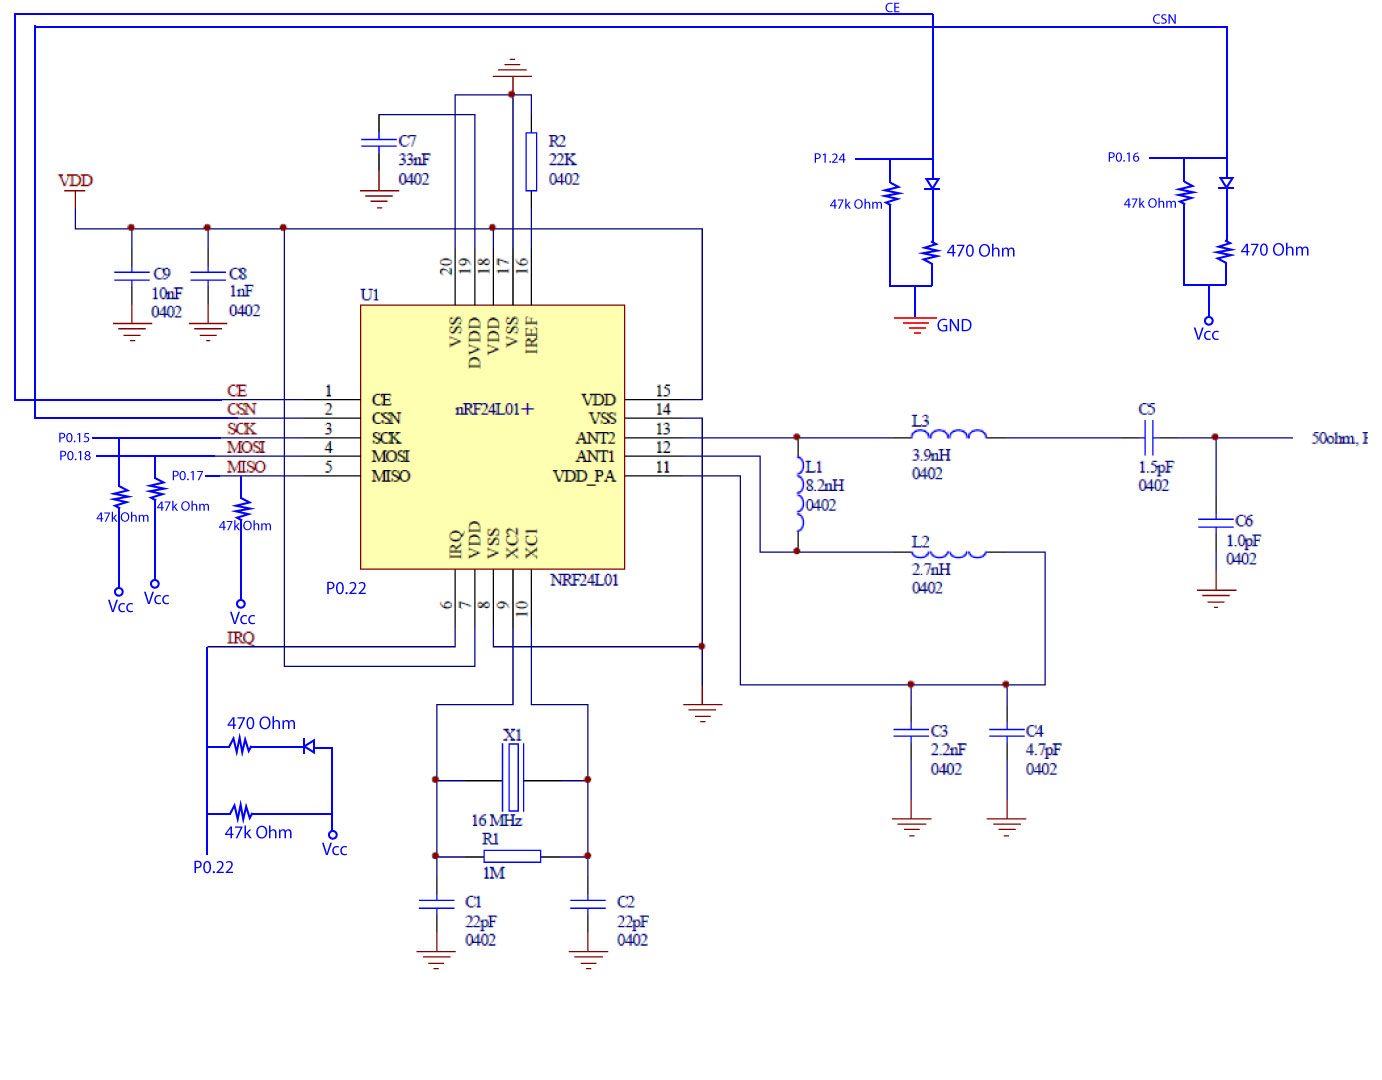 Fig 4. Hardware Schematic of nRF24L01